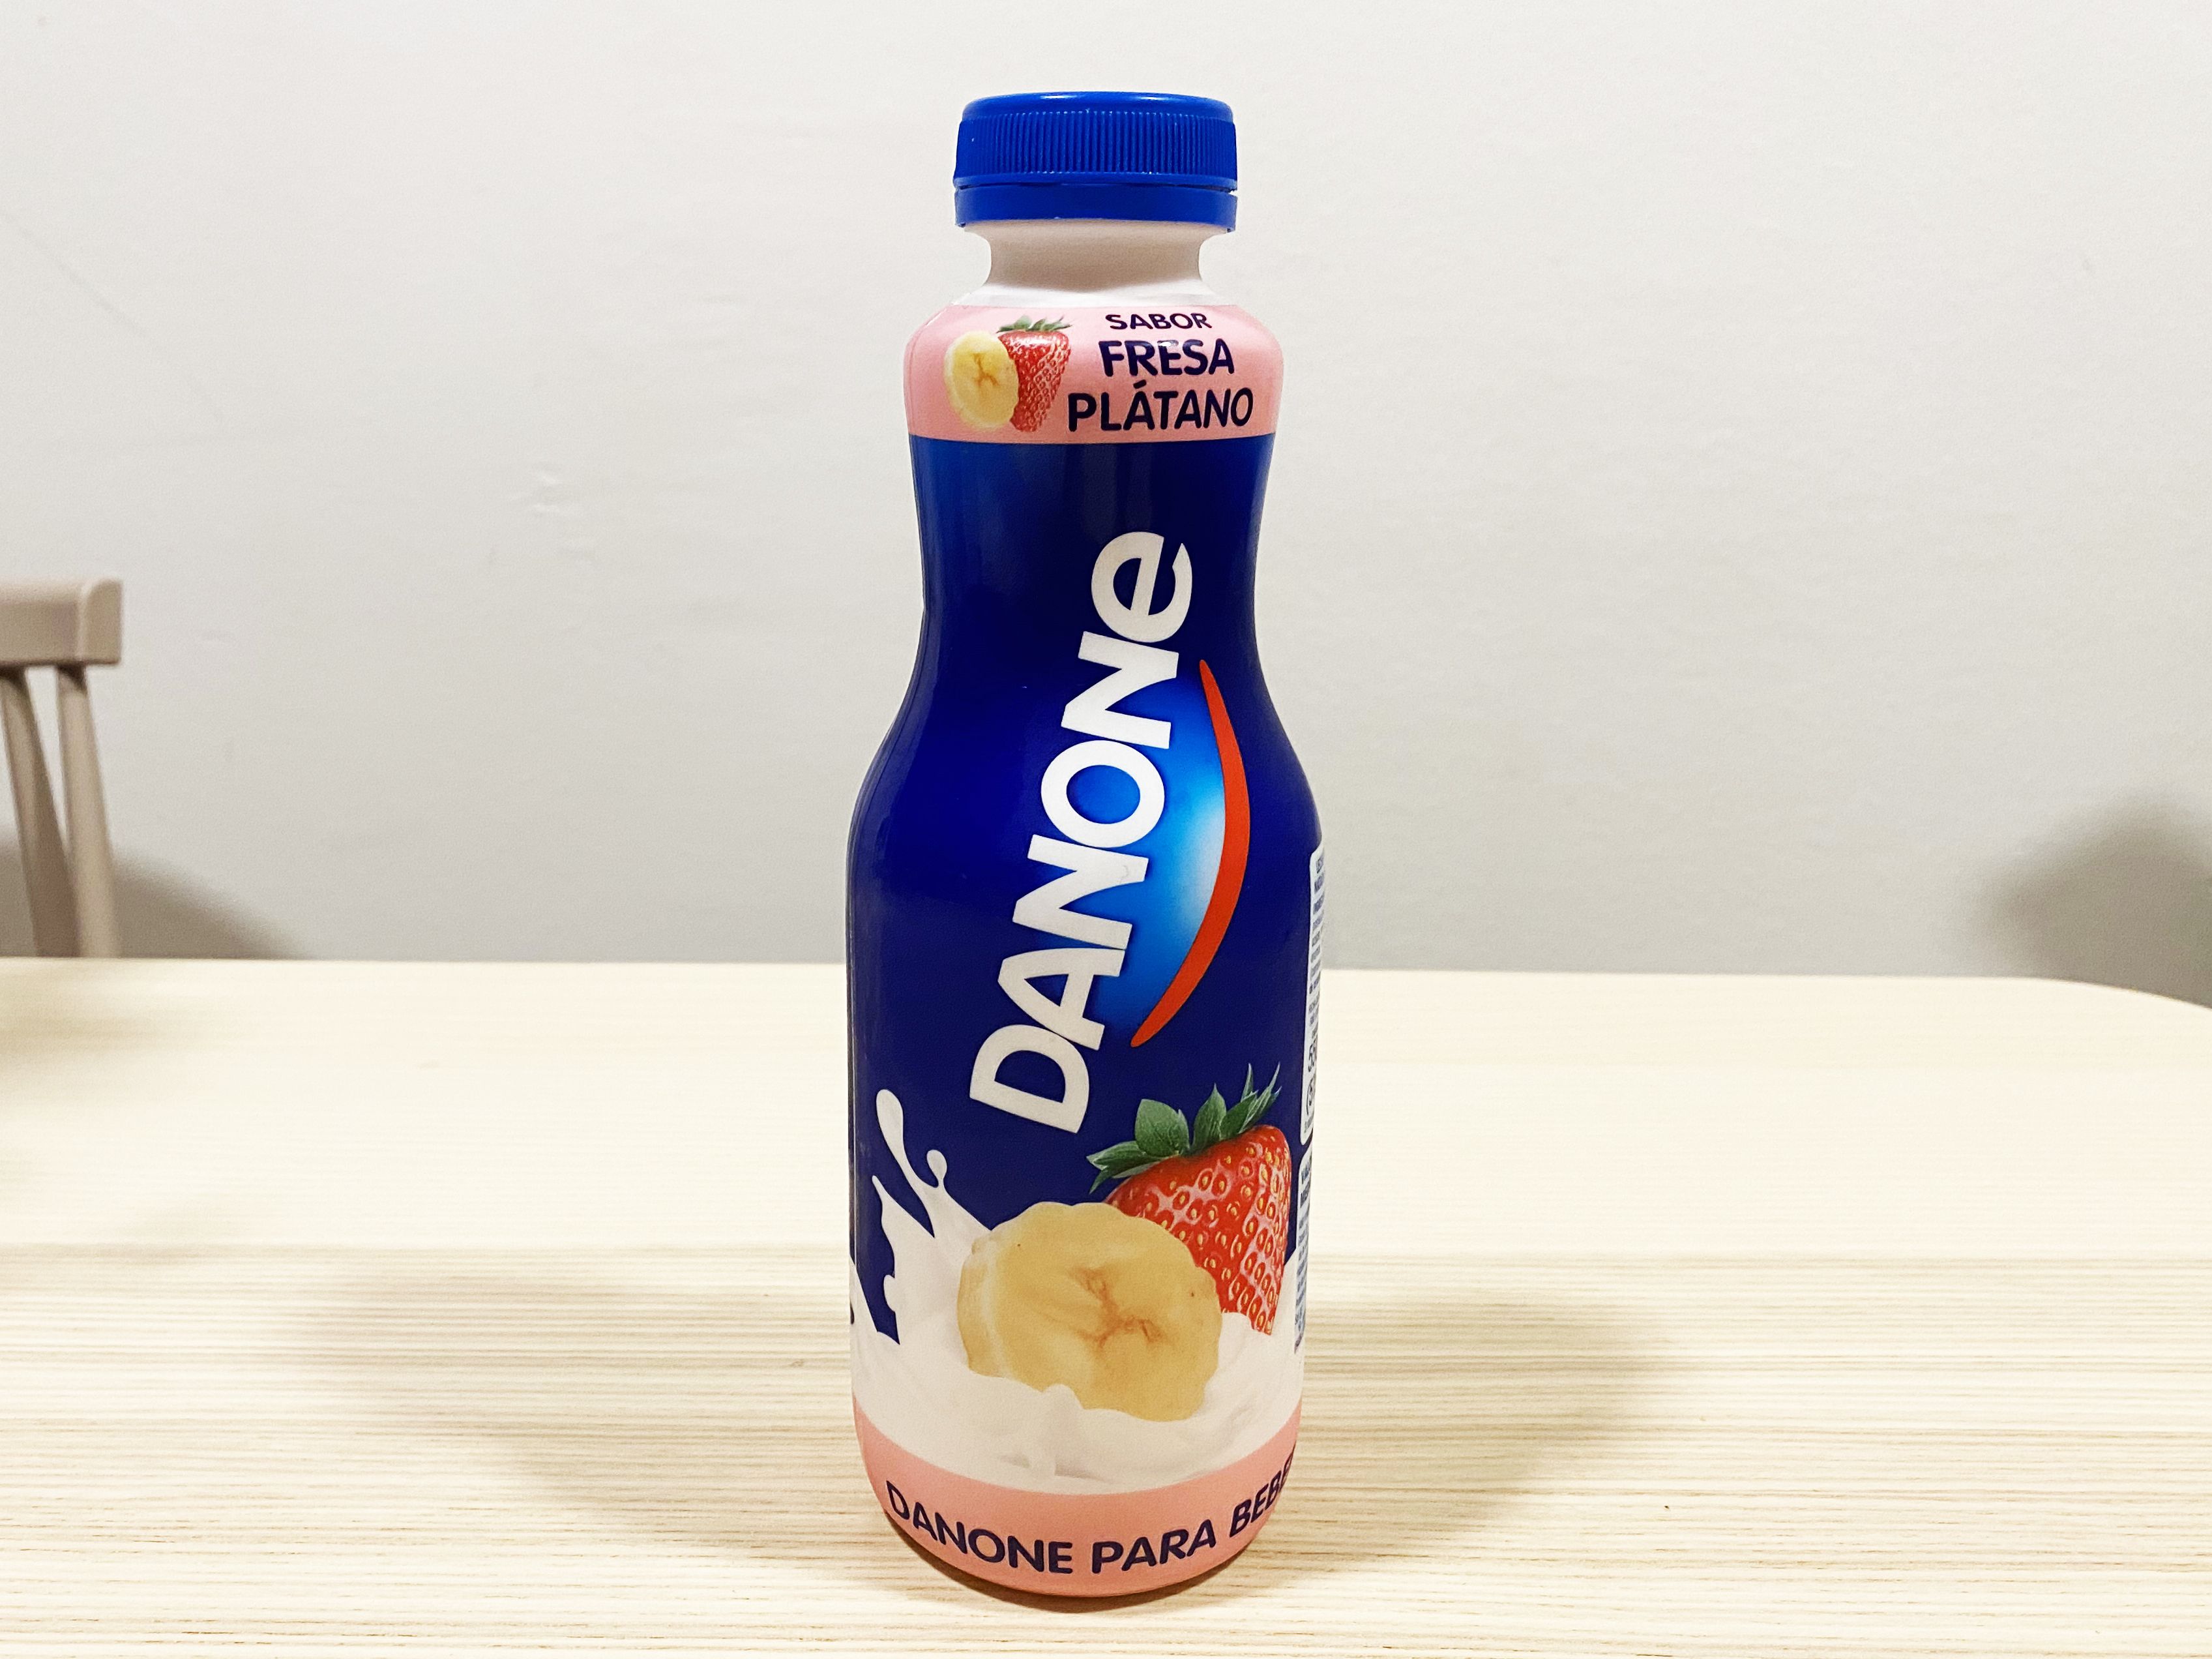 Yogur líquido Realfooding y yogur natural Danone: mismos